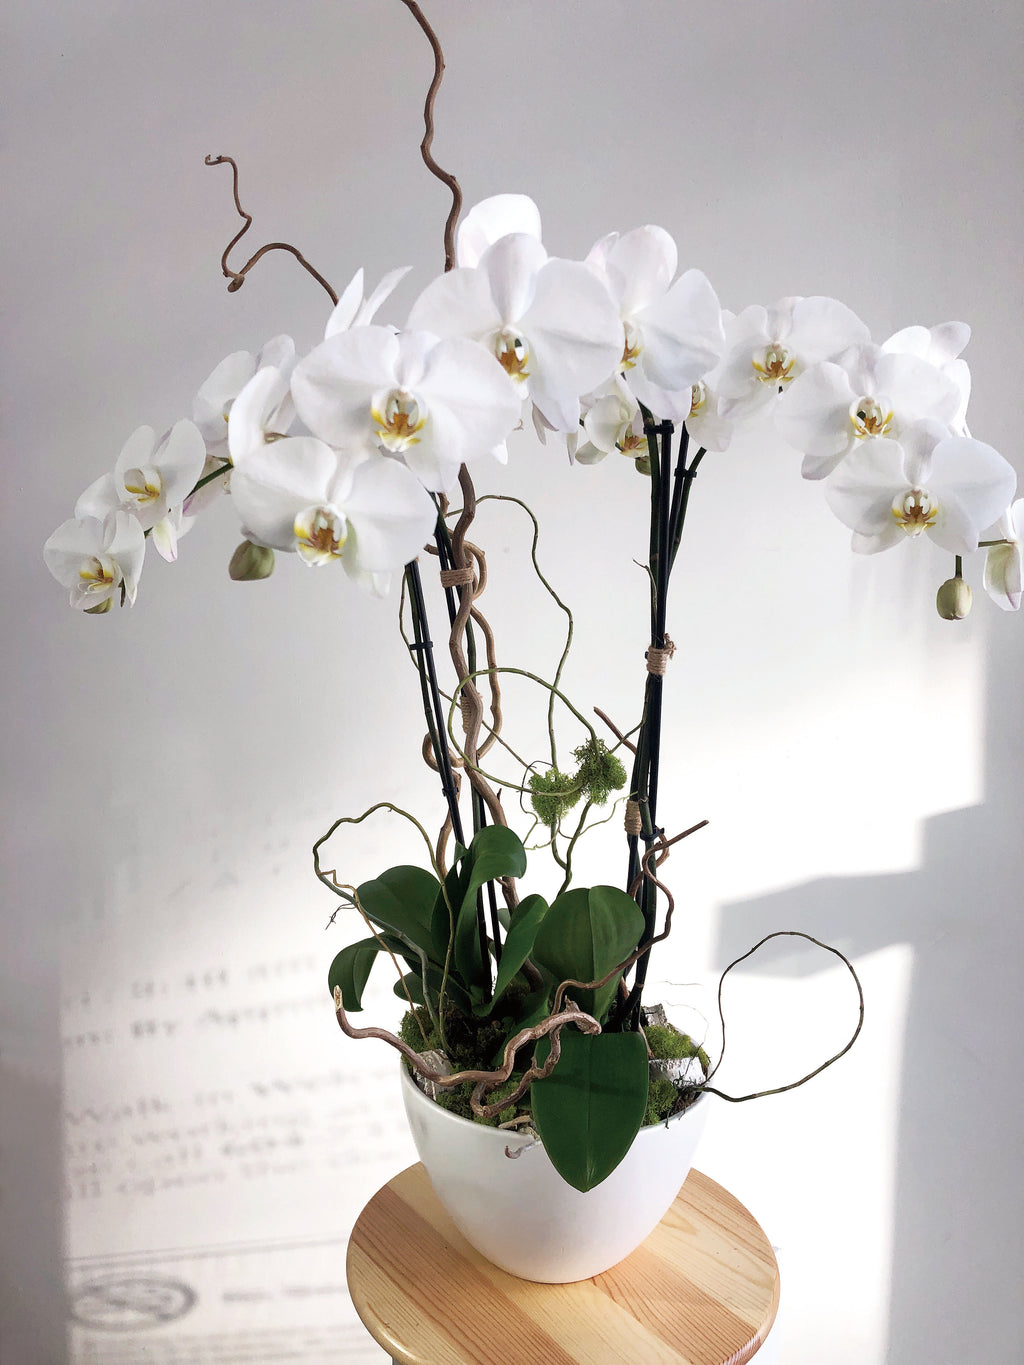 VA-9 (Orchid Arrangement)